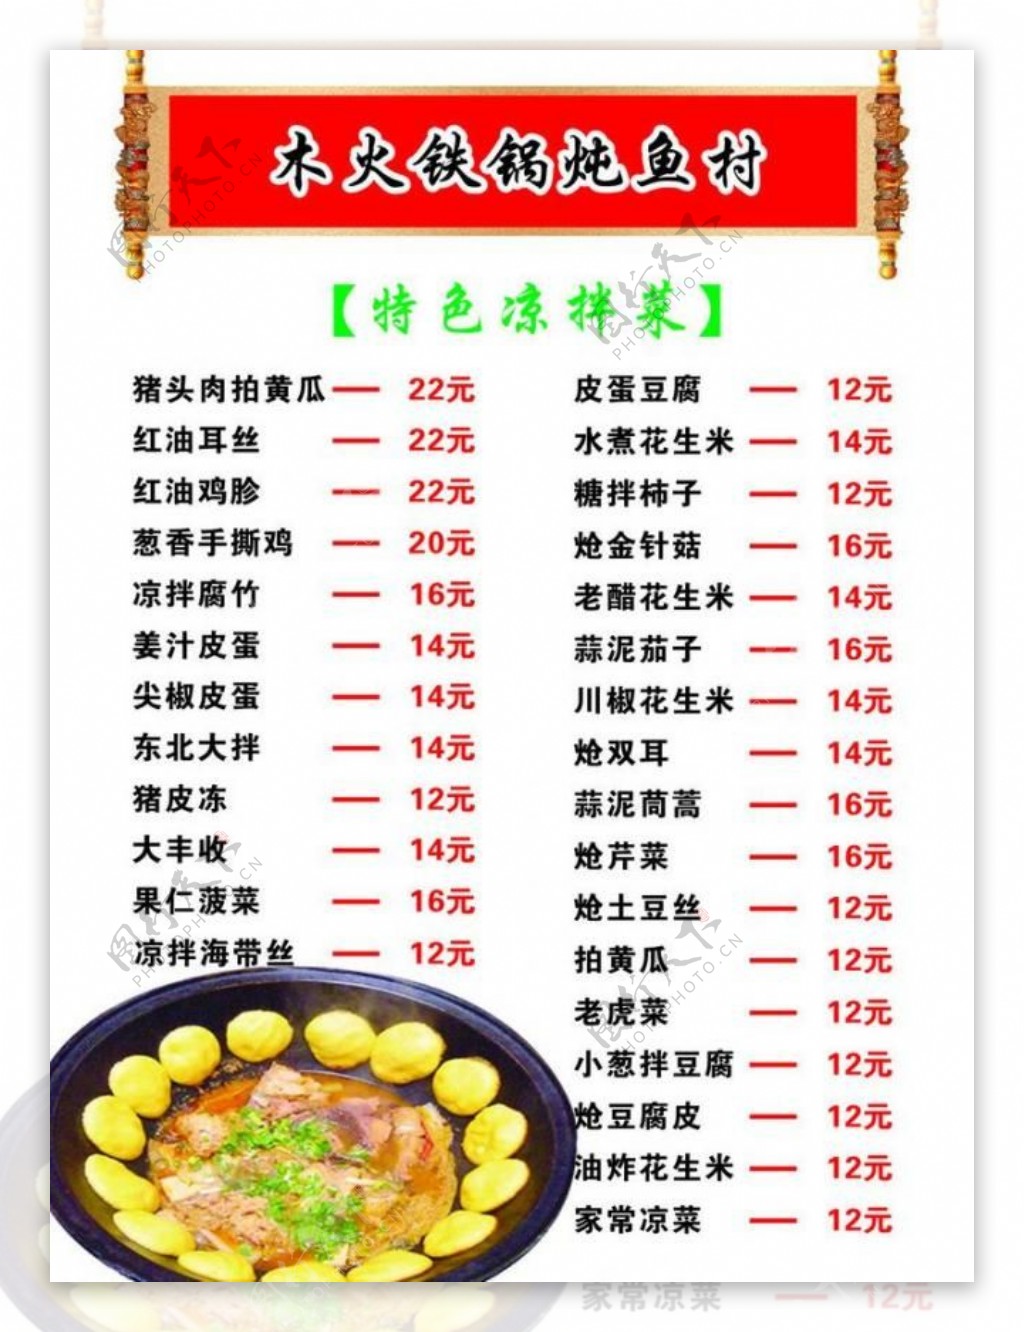 铁锅炖鱼菜单图片